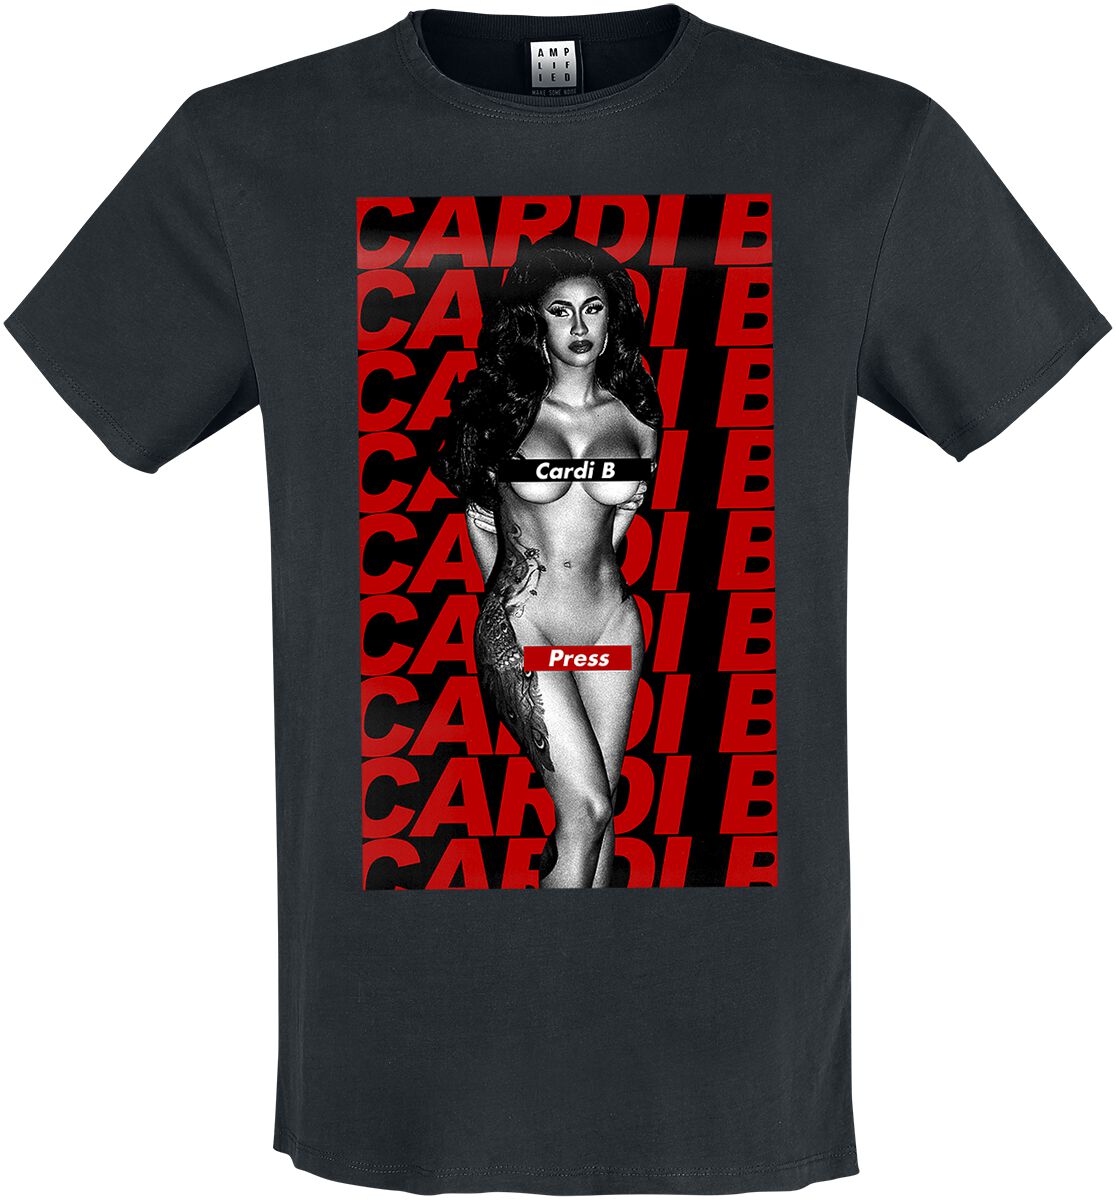 Cardi B T-Shirt - Amplified Collection - Press - S bis XXL - für Männer - Größe XXL - schwarz  - Lizenziertes Merchandise!